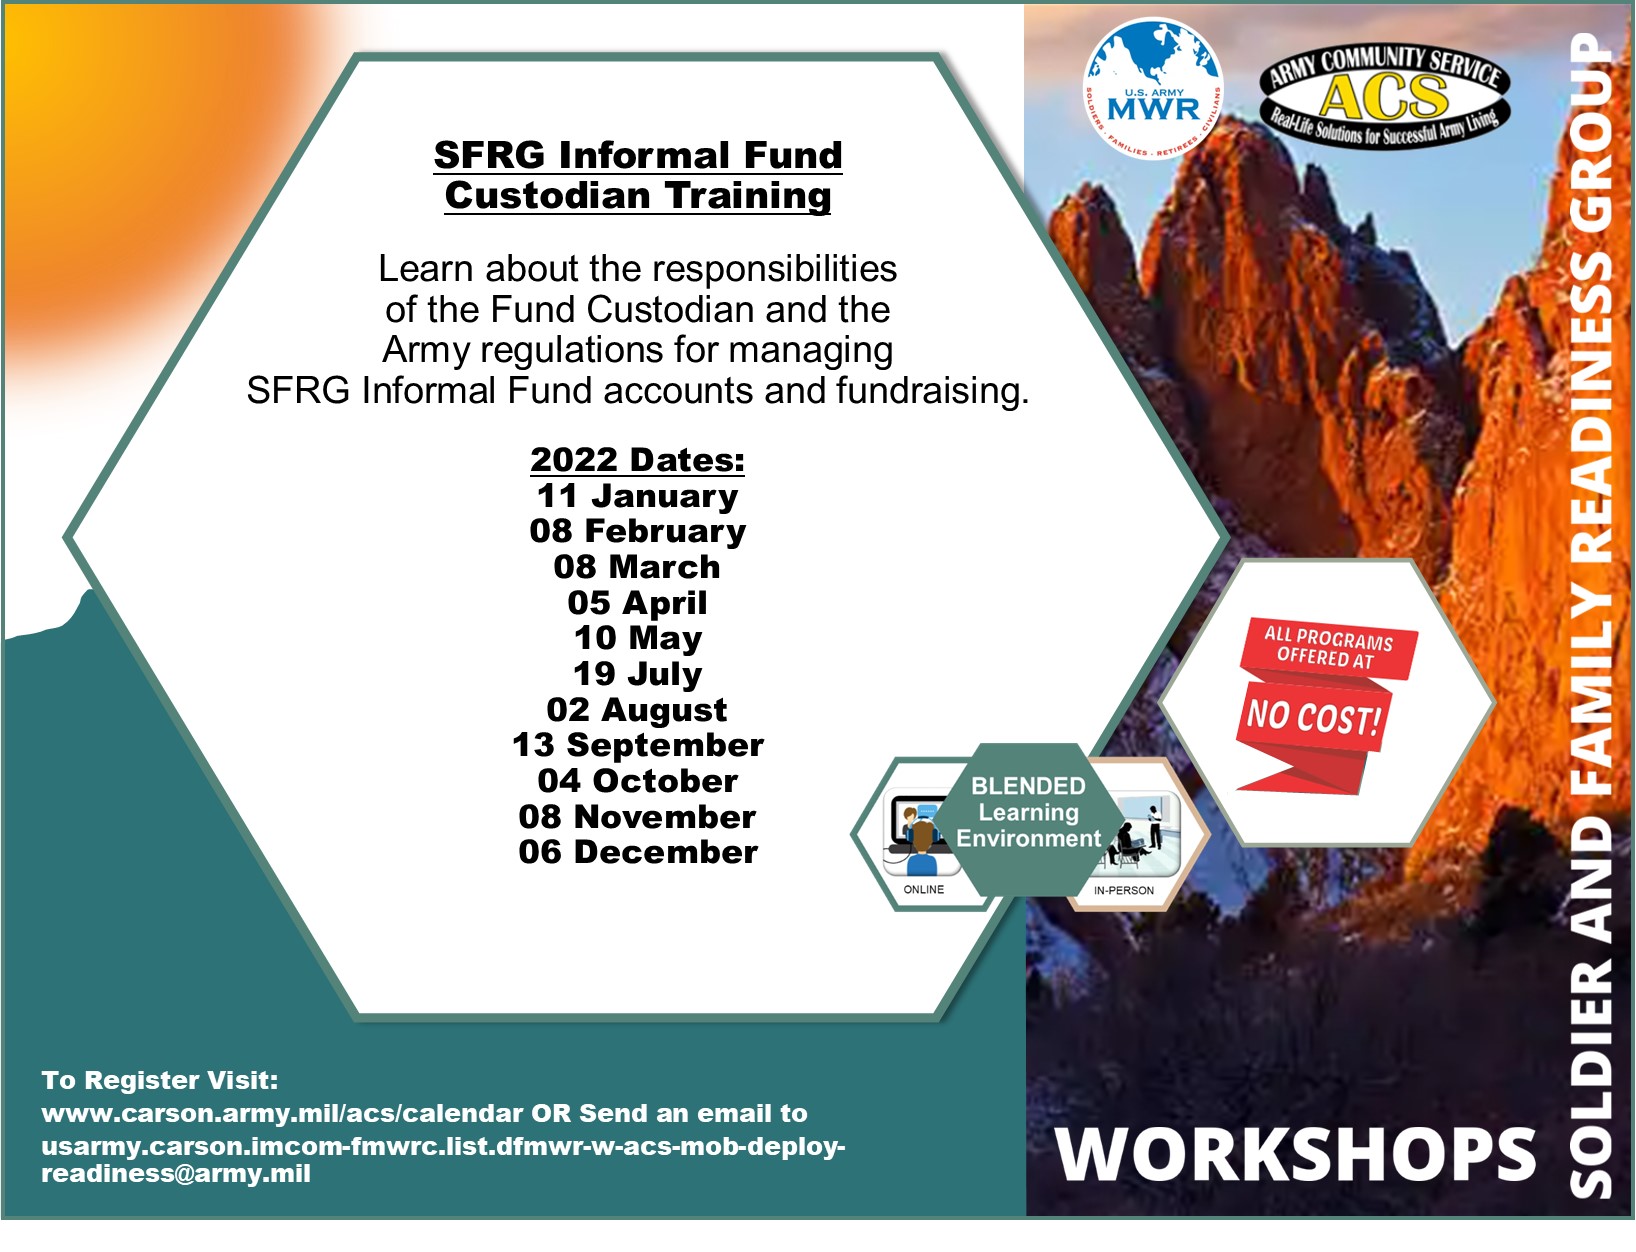 SFRG Informal Fund Custodian Training